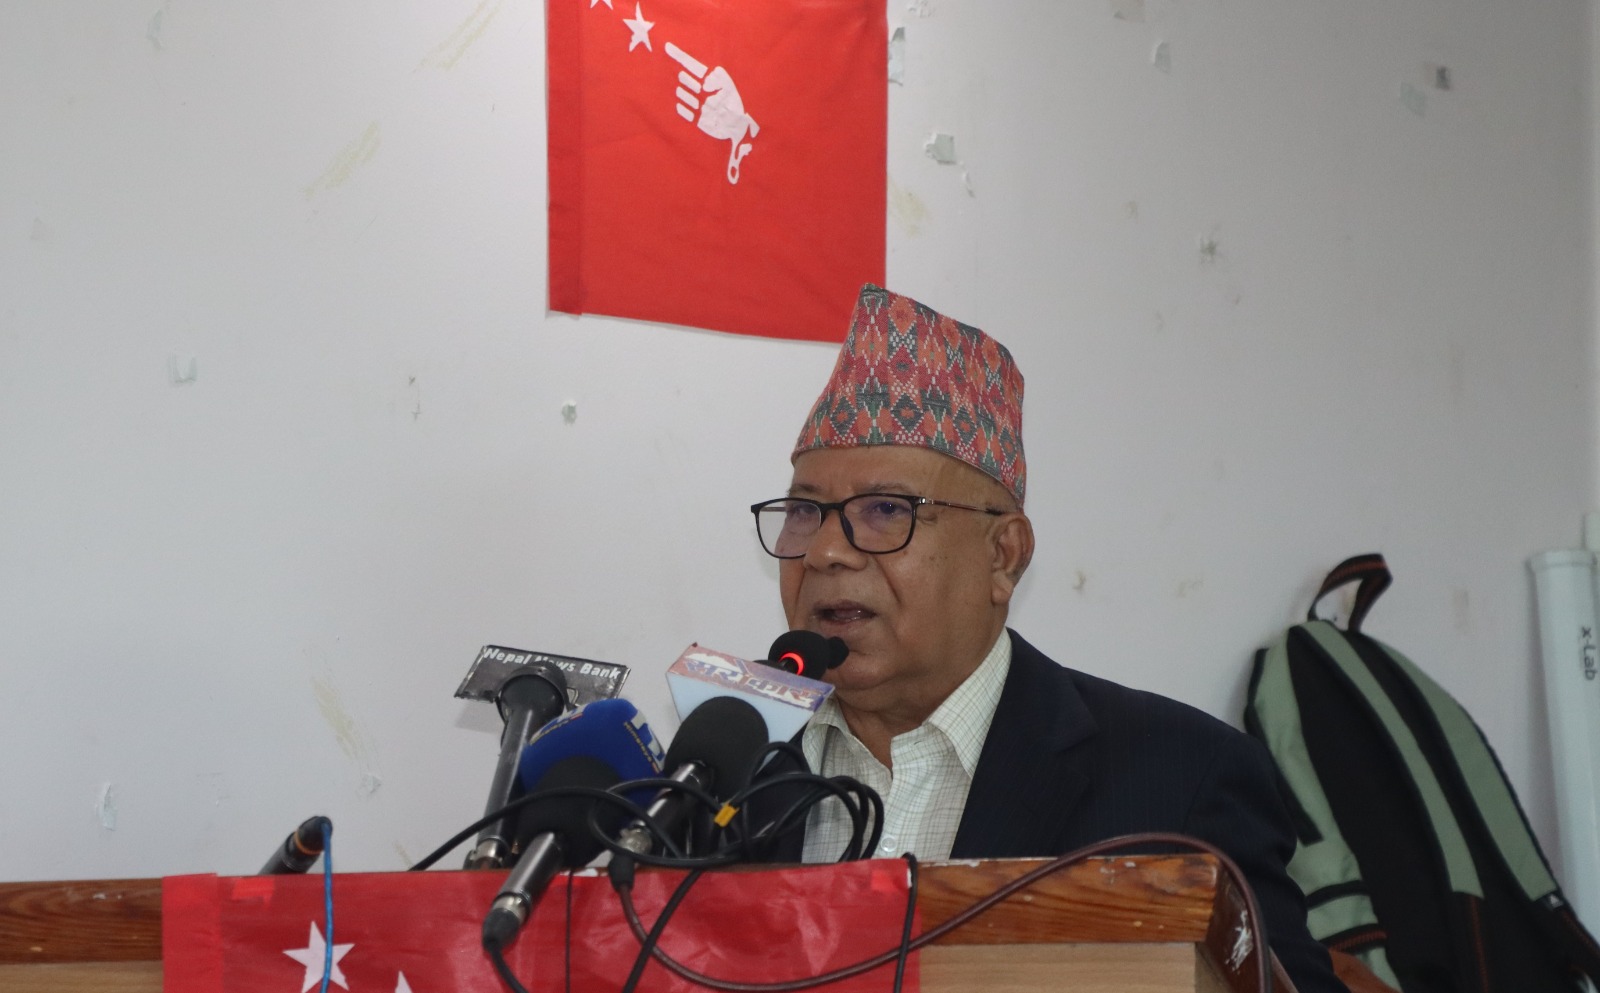 श्रम क्षेत्रको विभेद हटाउन नीतिगत सुधार आवश्यक: अध्यक्ष नेपाल